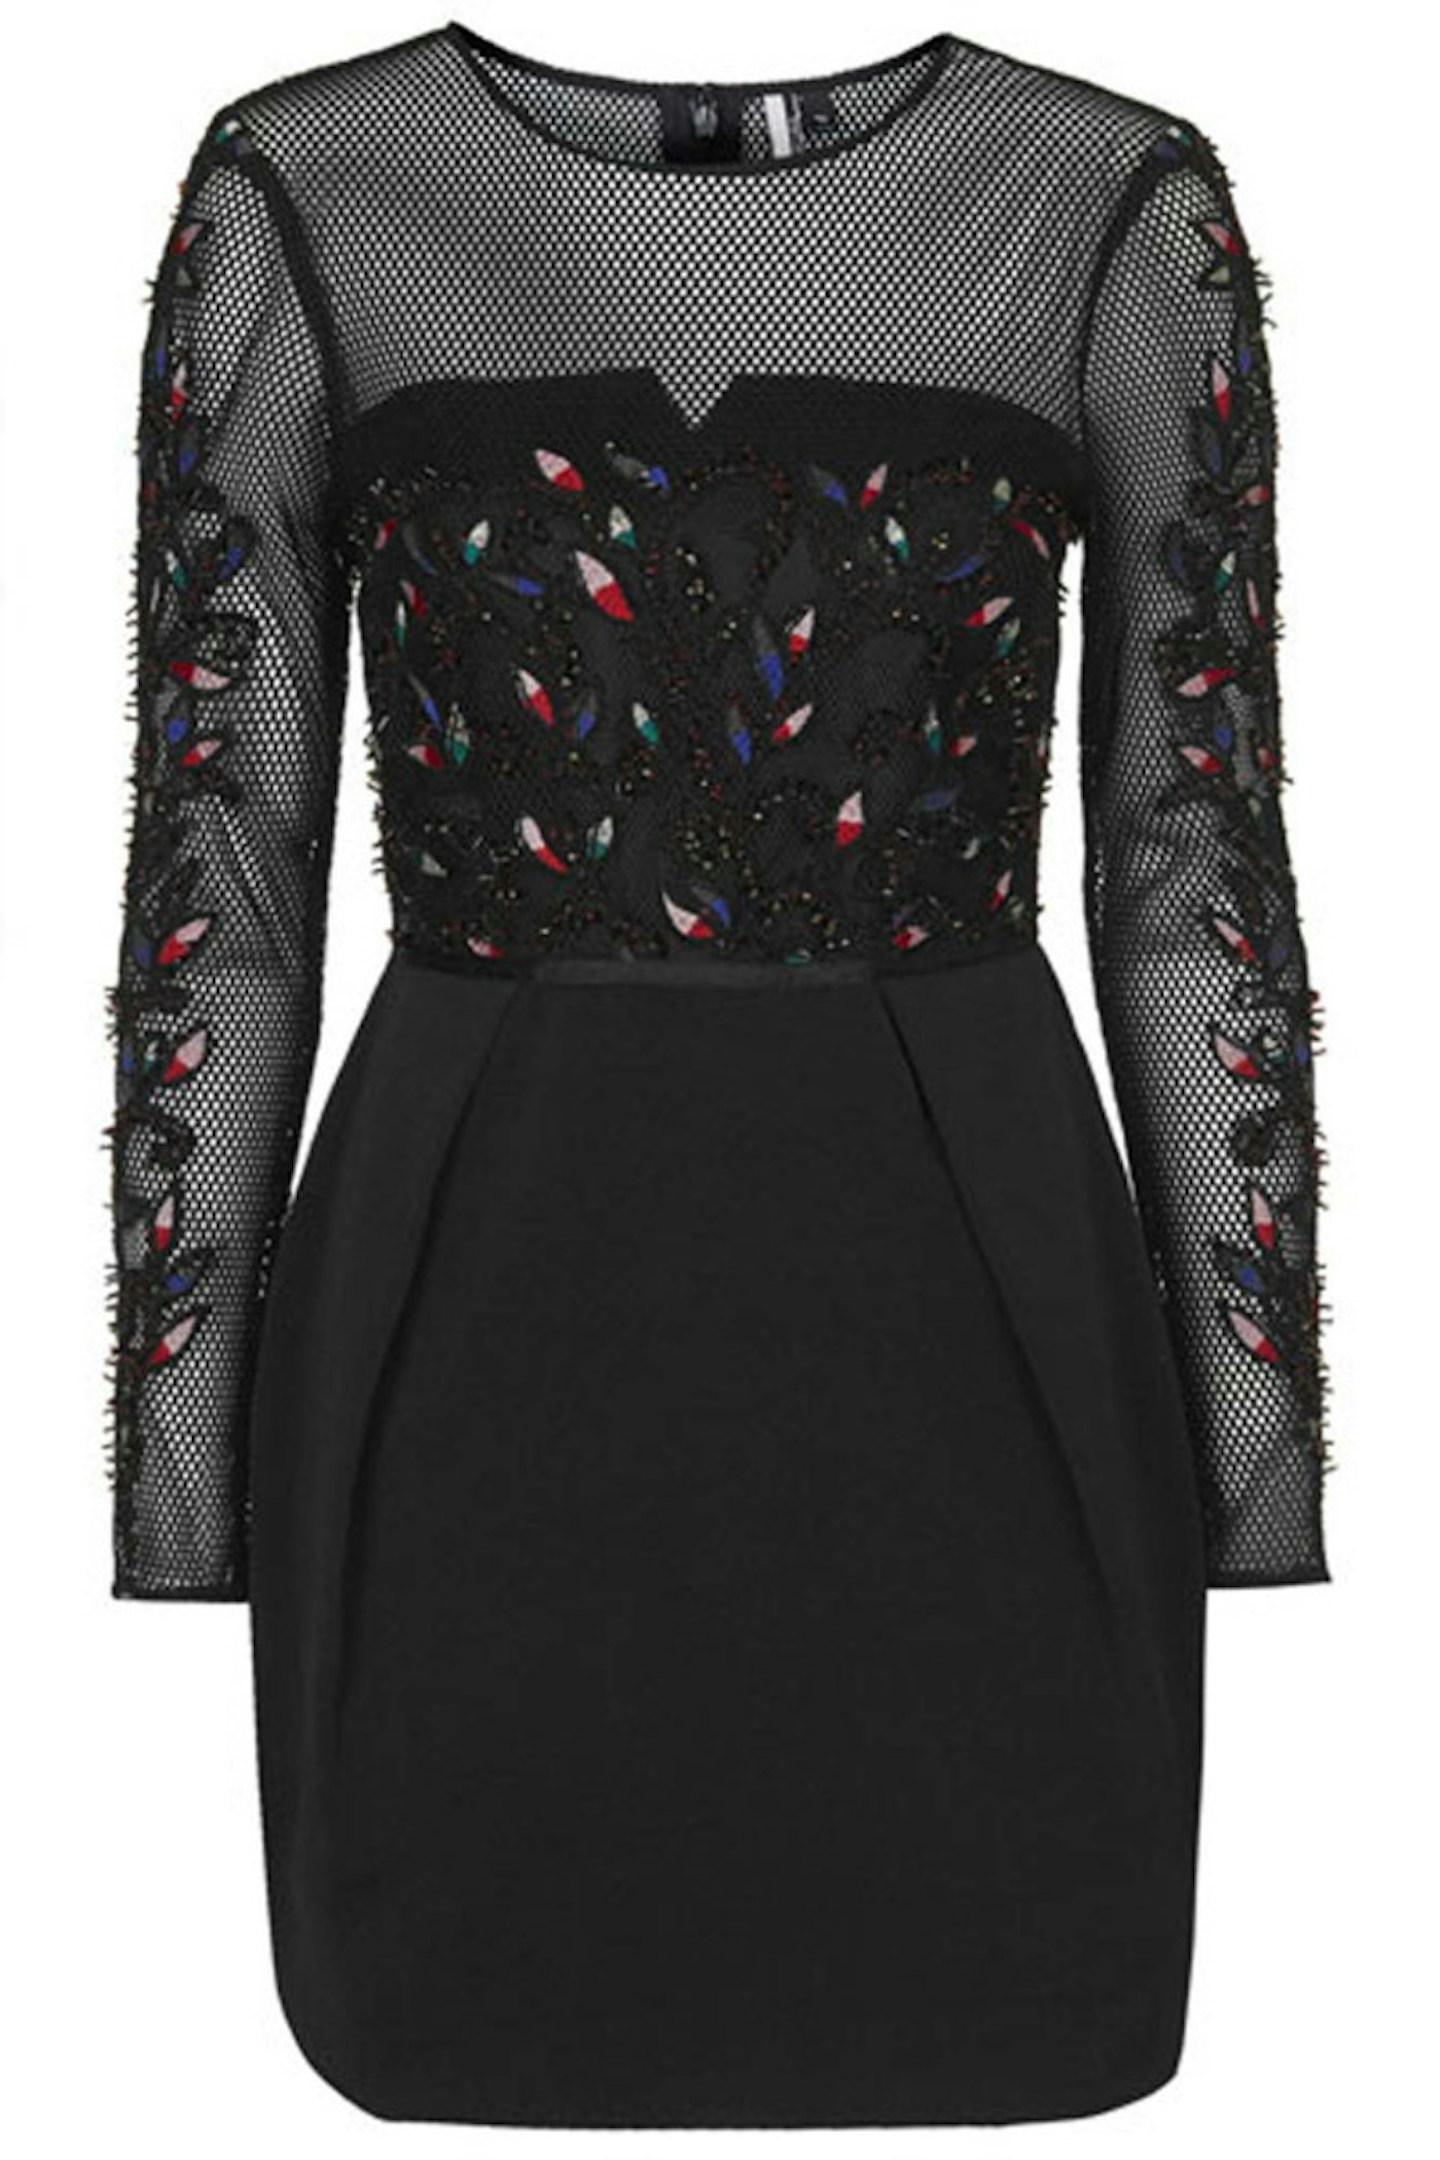 Limited Edition Embellished mesh dress, £150, Topshop